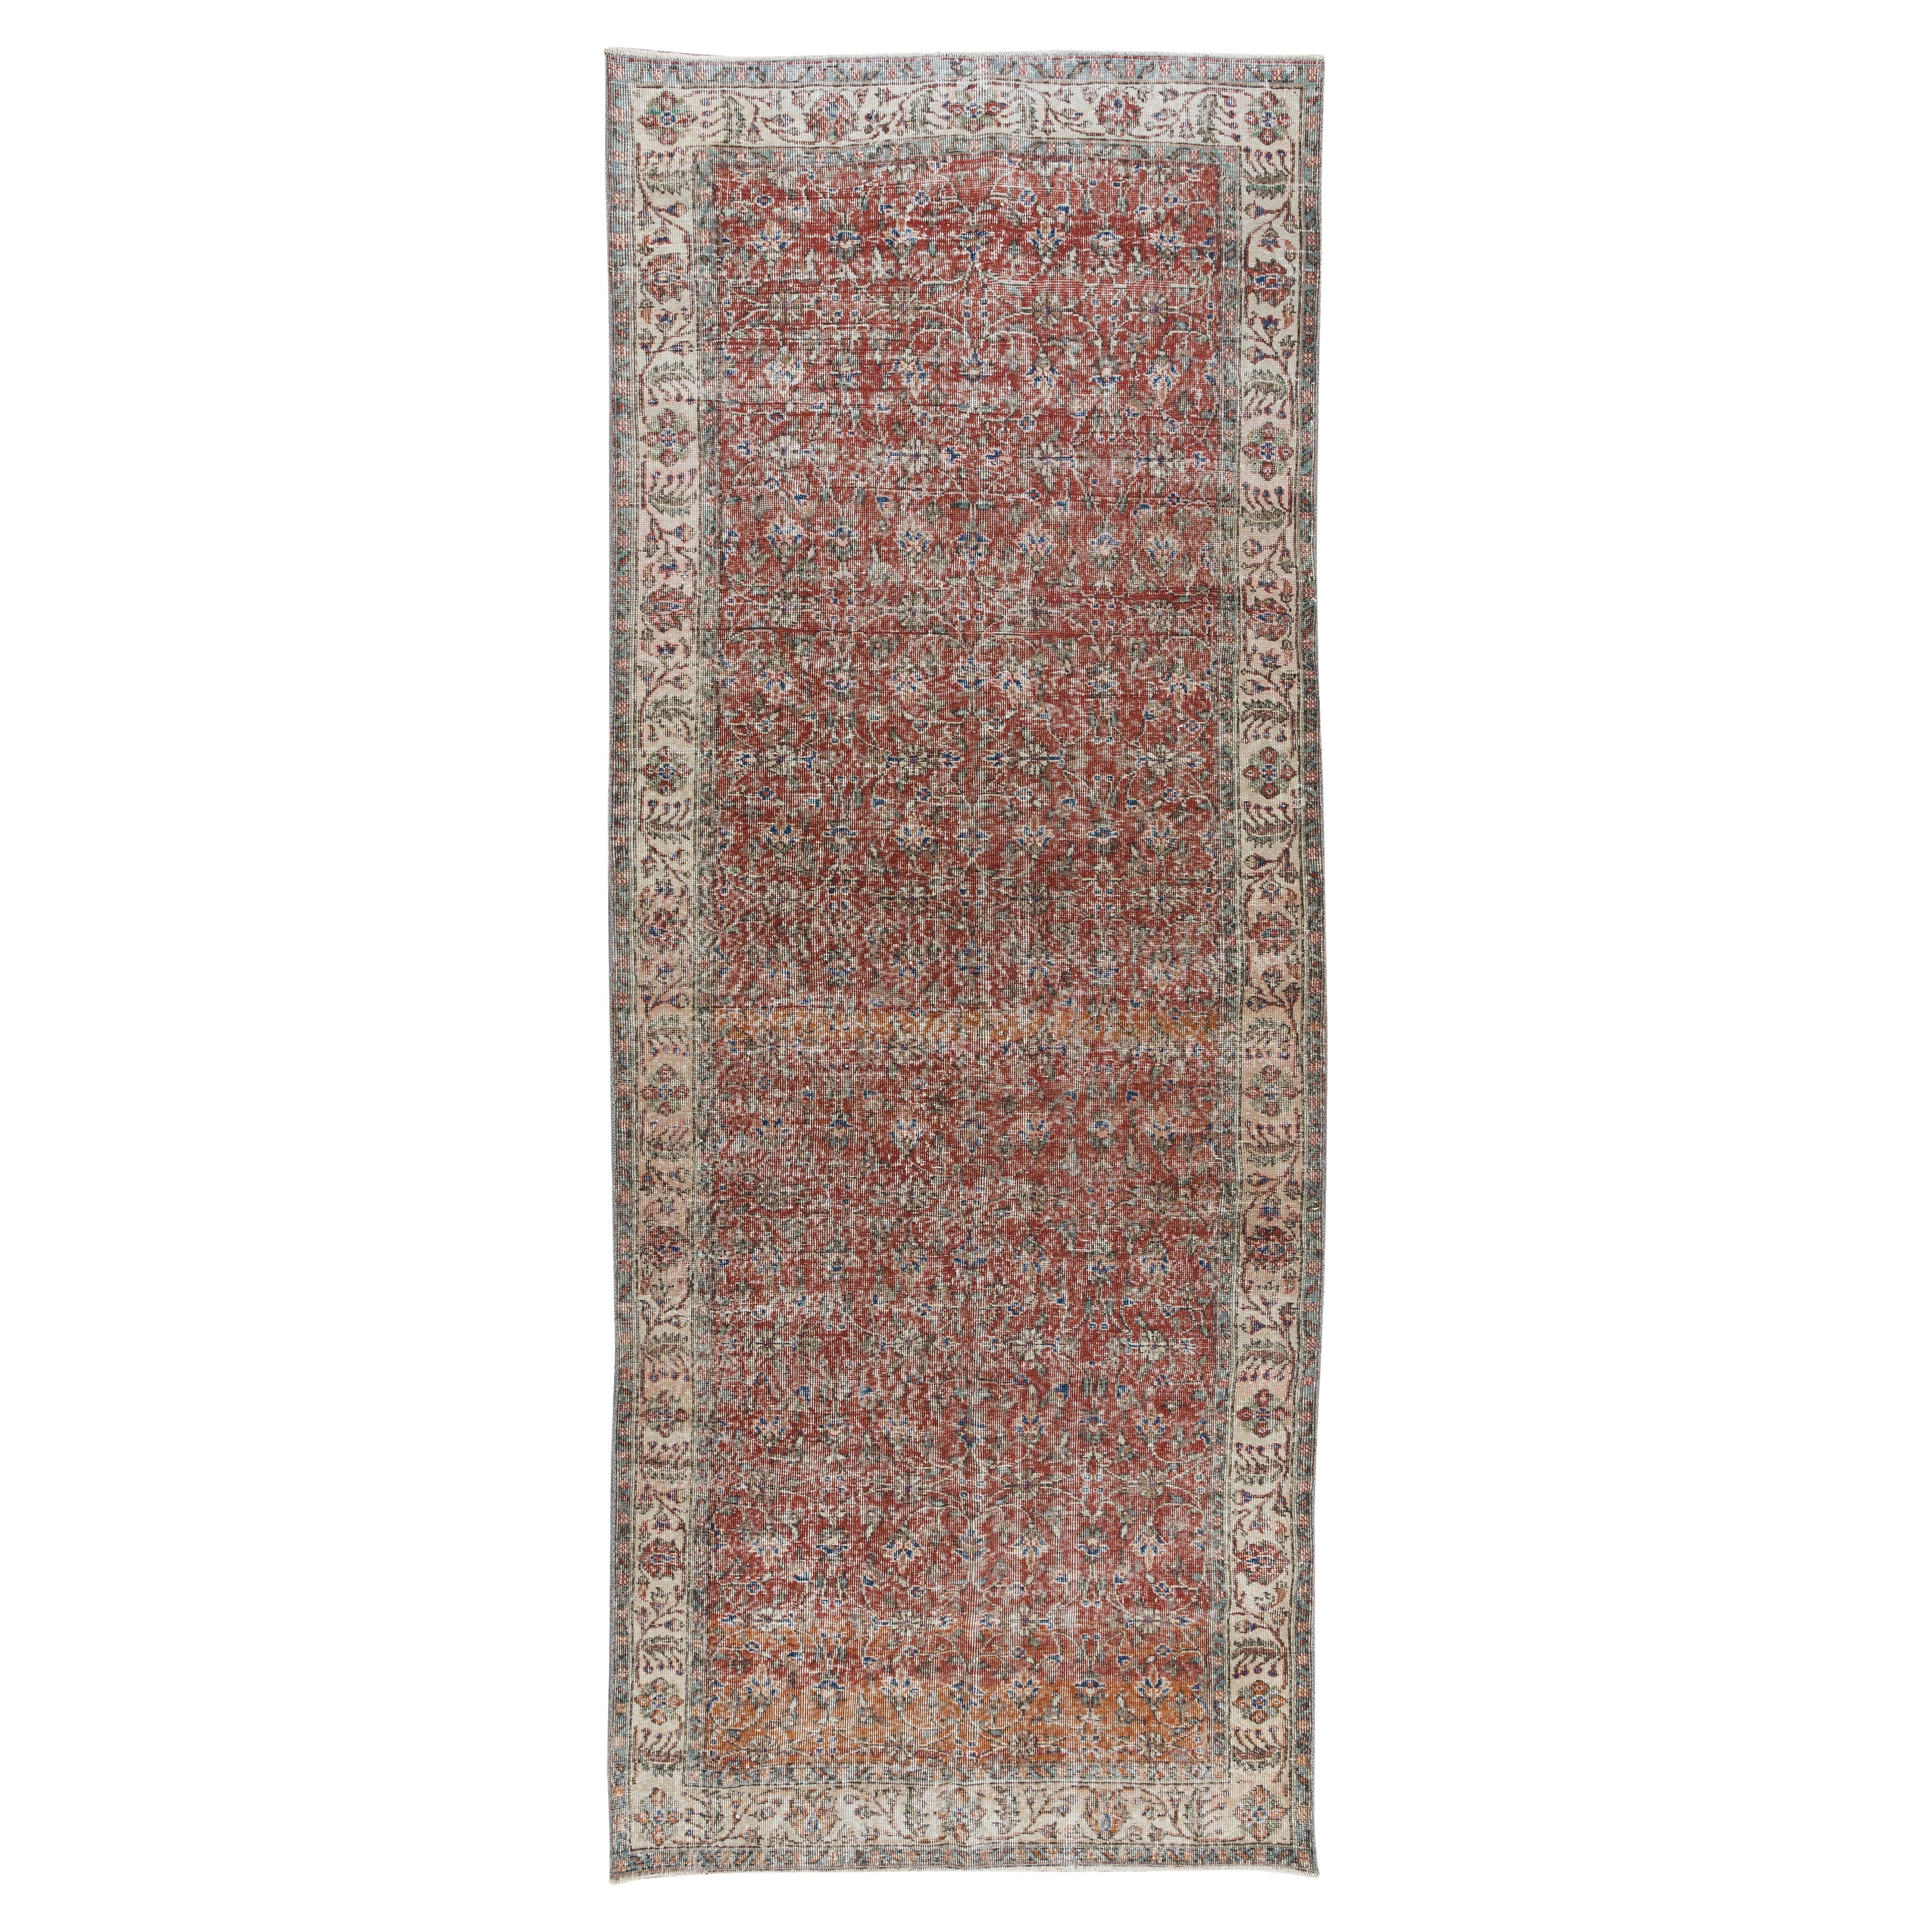 4.6x12.6 Pieds motif floral turc. Vieux tapis noué à la main pour le couloir